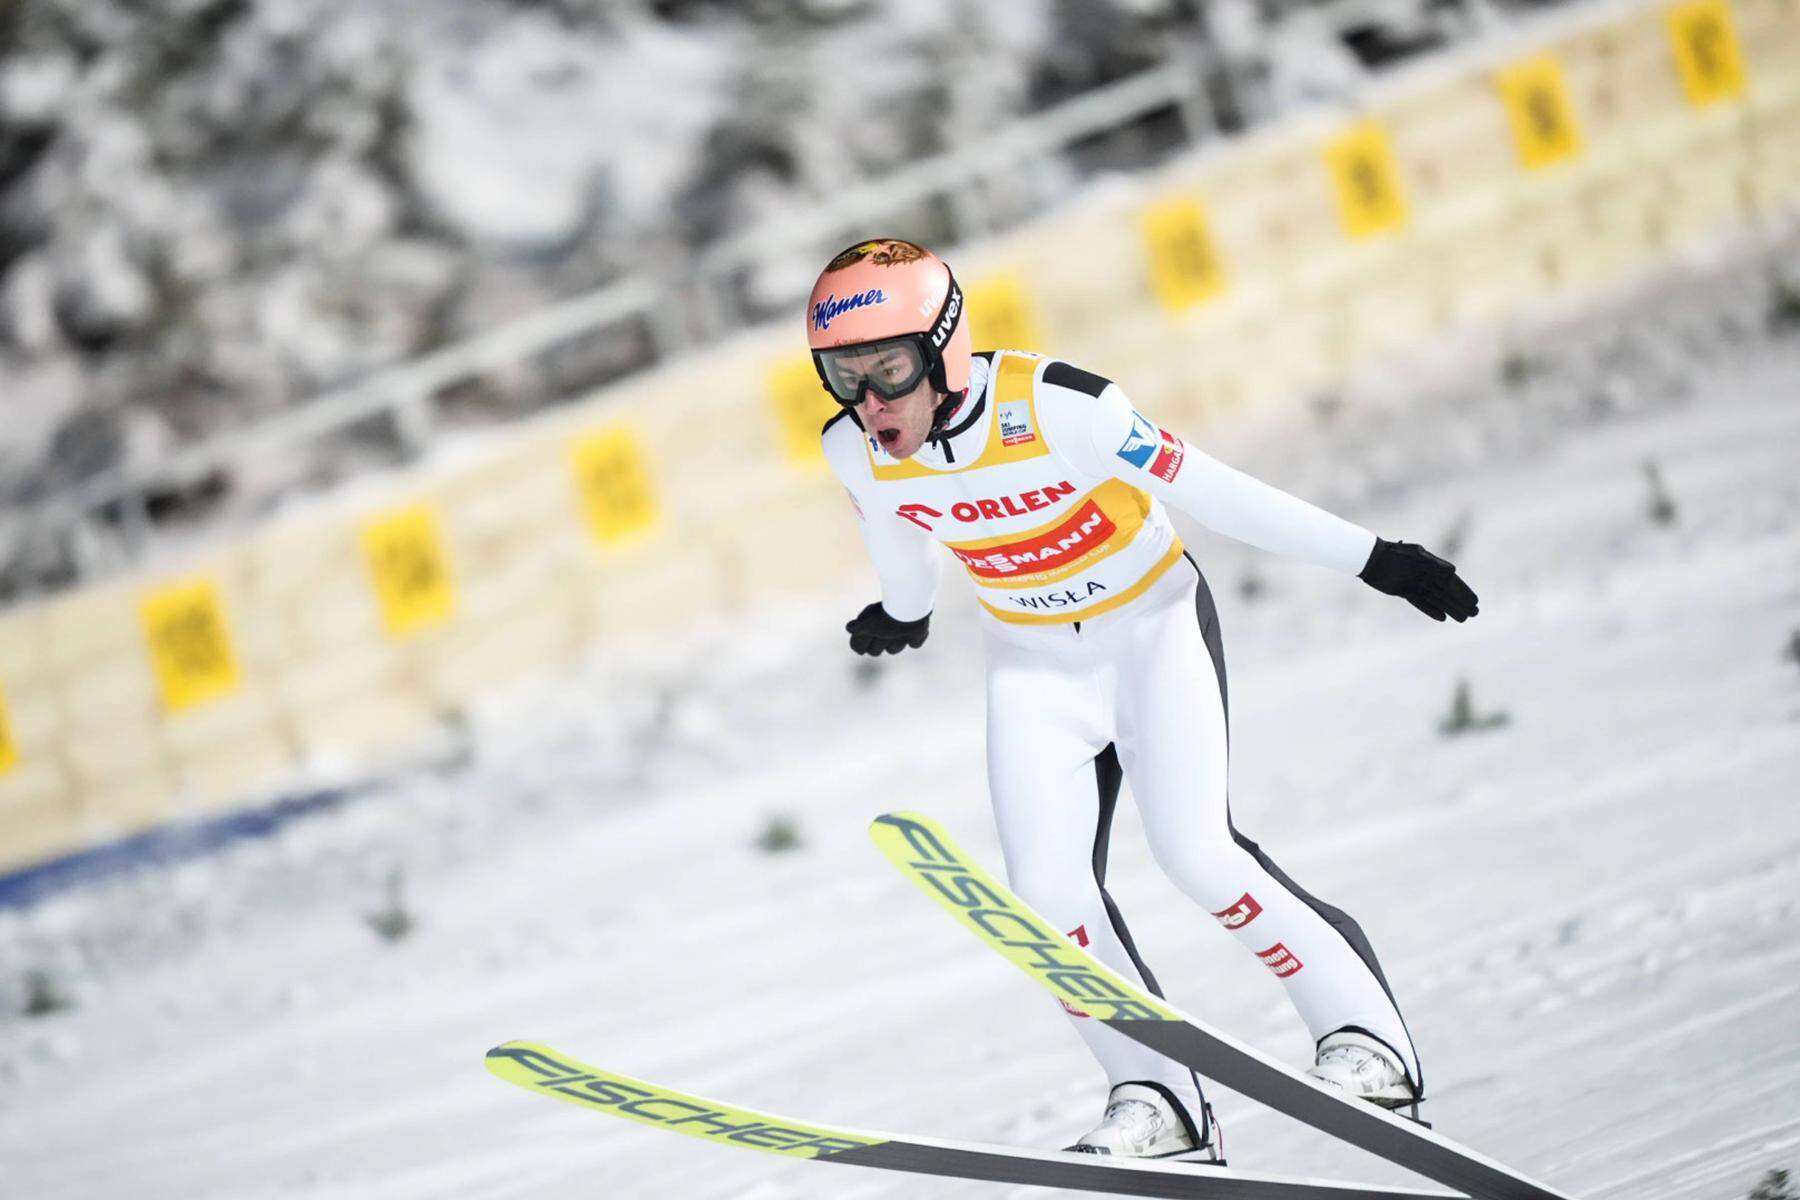 Skispringen in Wisla | Stefan Kraft führt: Der zweite Durchgang jetzt im Liveticker